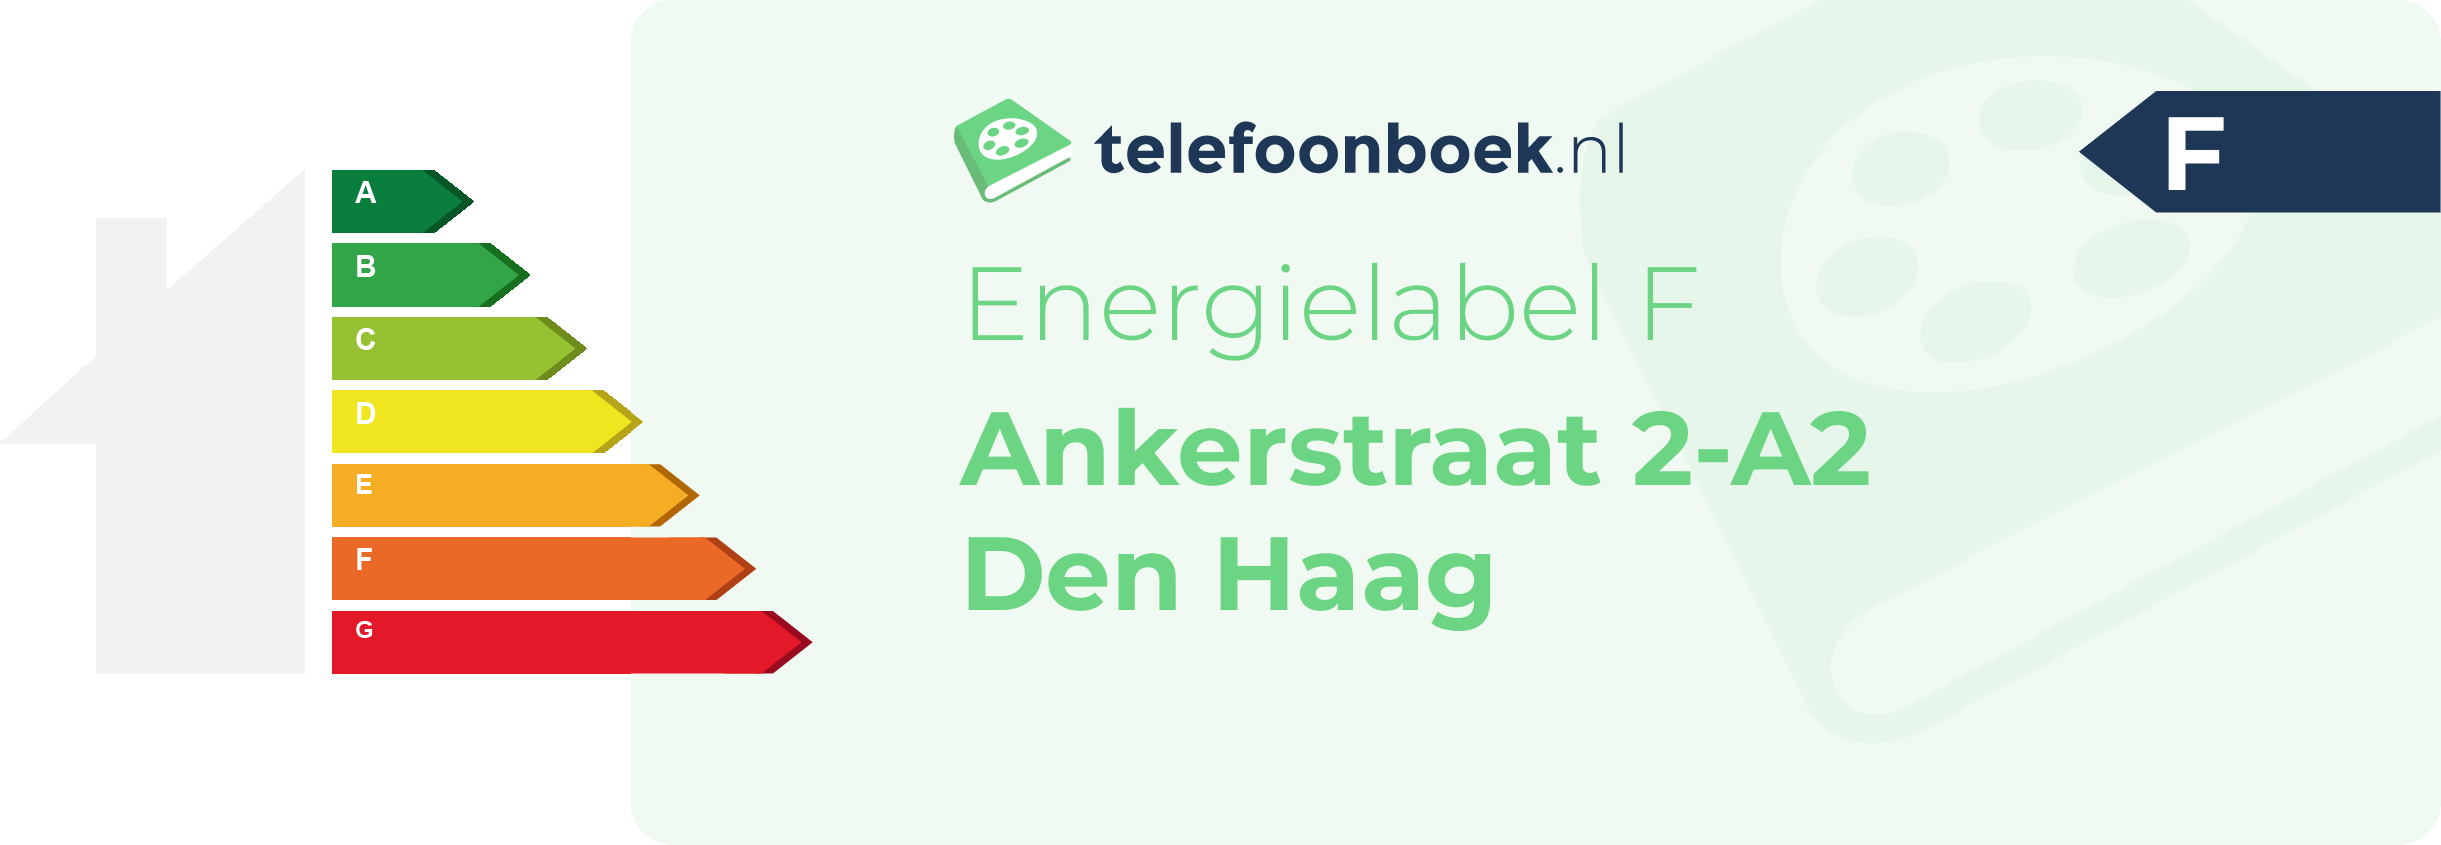 Energielabel Ankerstraat 2-A2 Den Haag